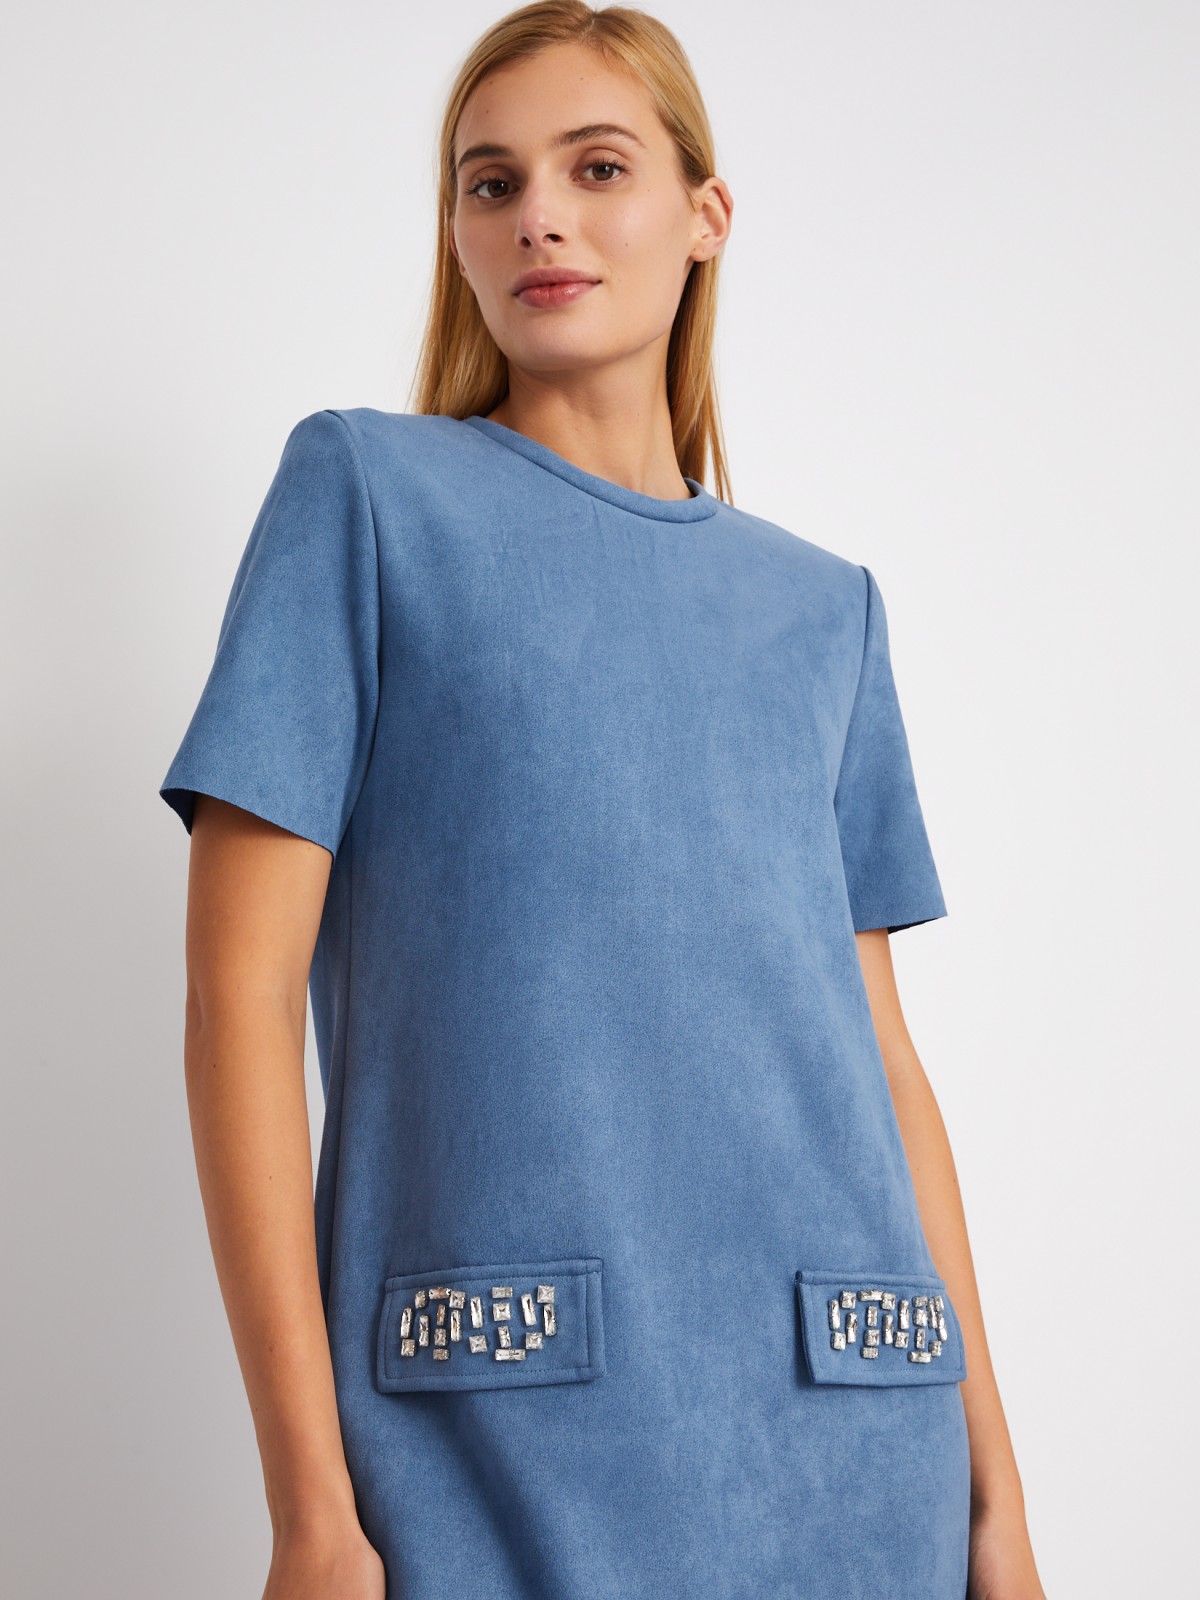 Платье-футболка из экозамши со стразами zolla 024118262361, цвет голубой, размер XS - фото 3